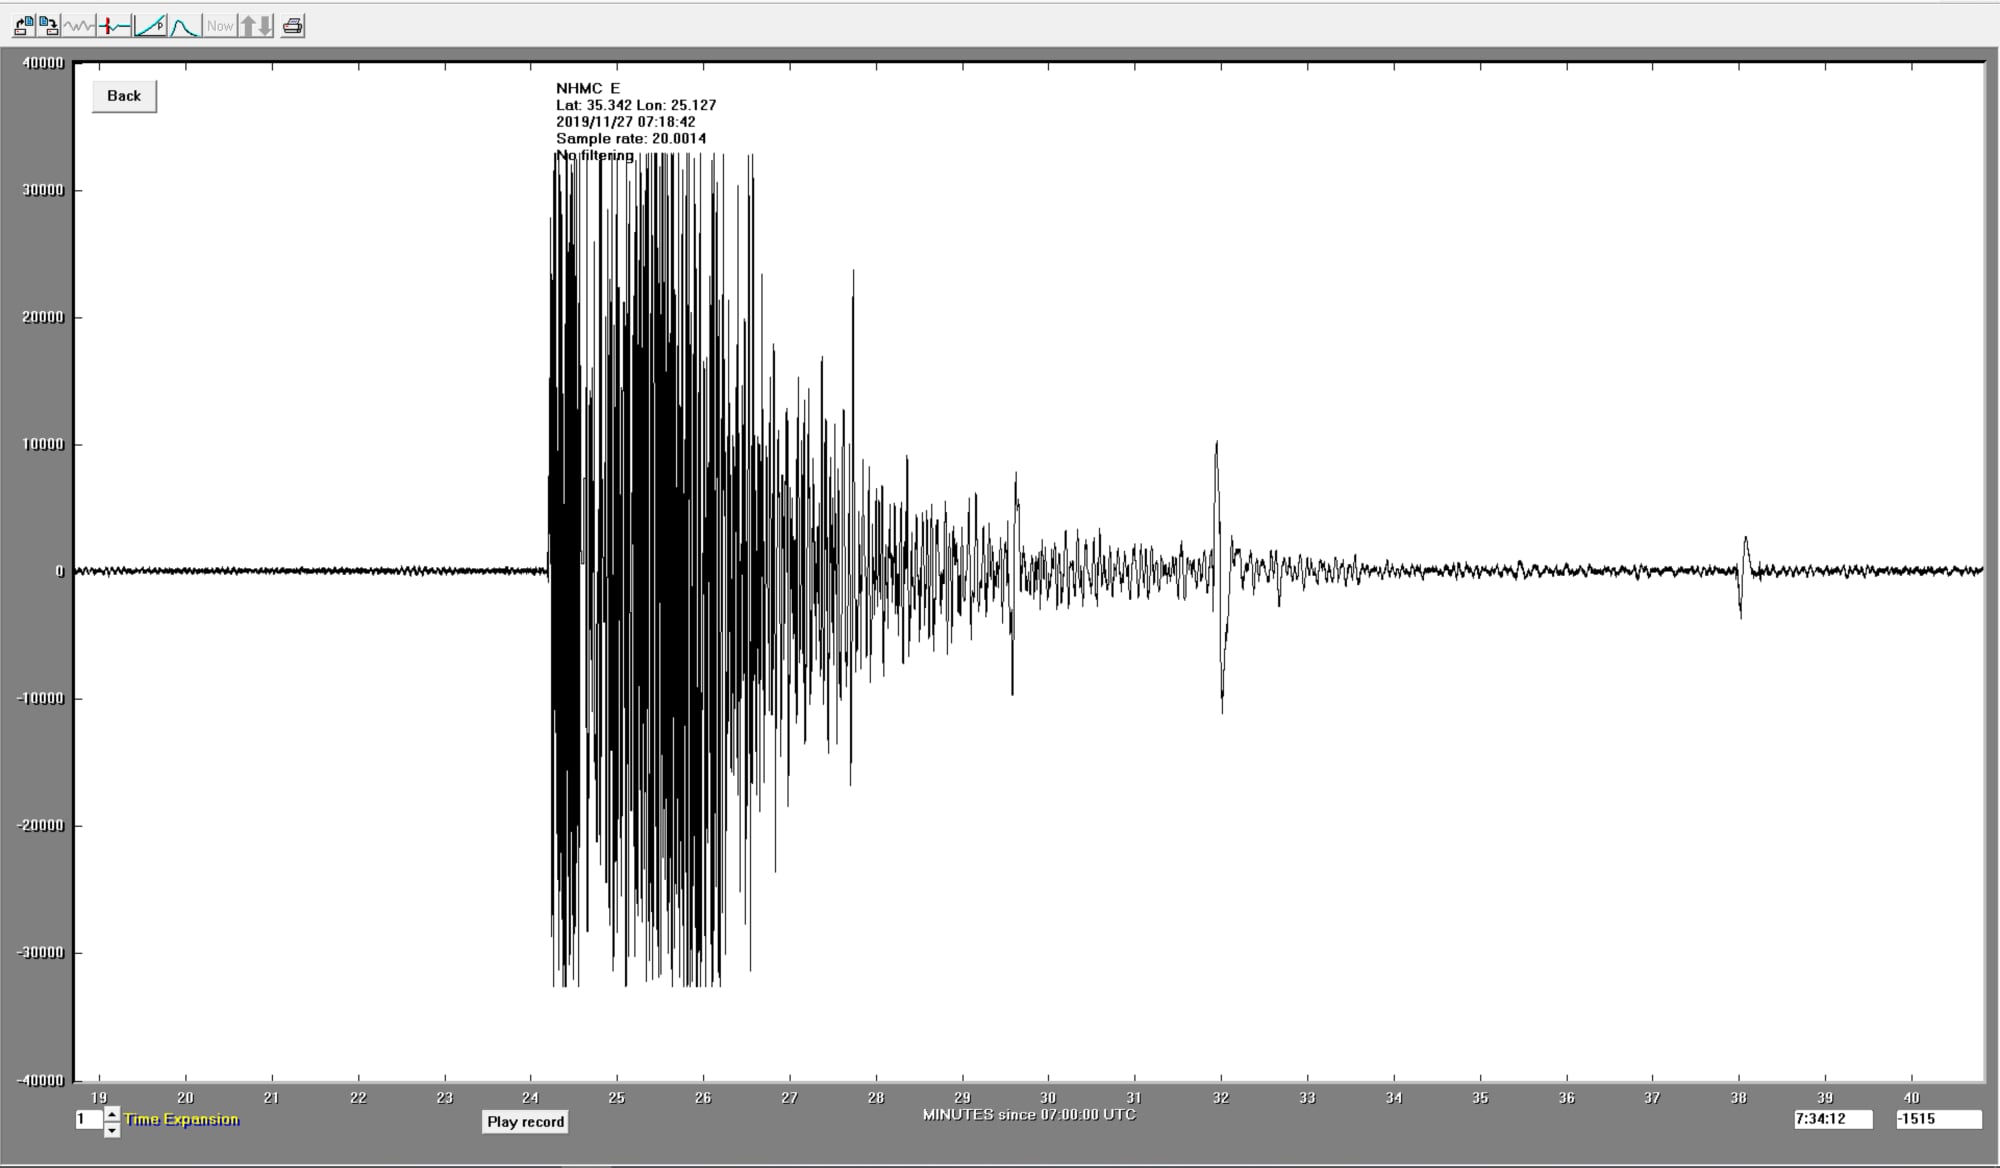 Βίντεο την ώρα της καταγραφής του σεισμού στα Χανιά από τον σεισμογράφο